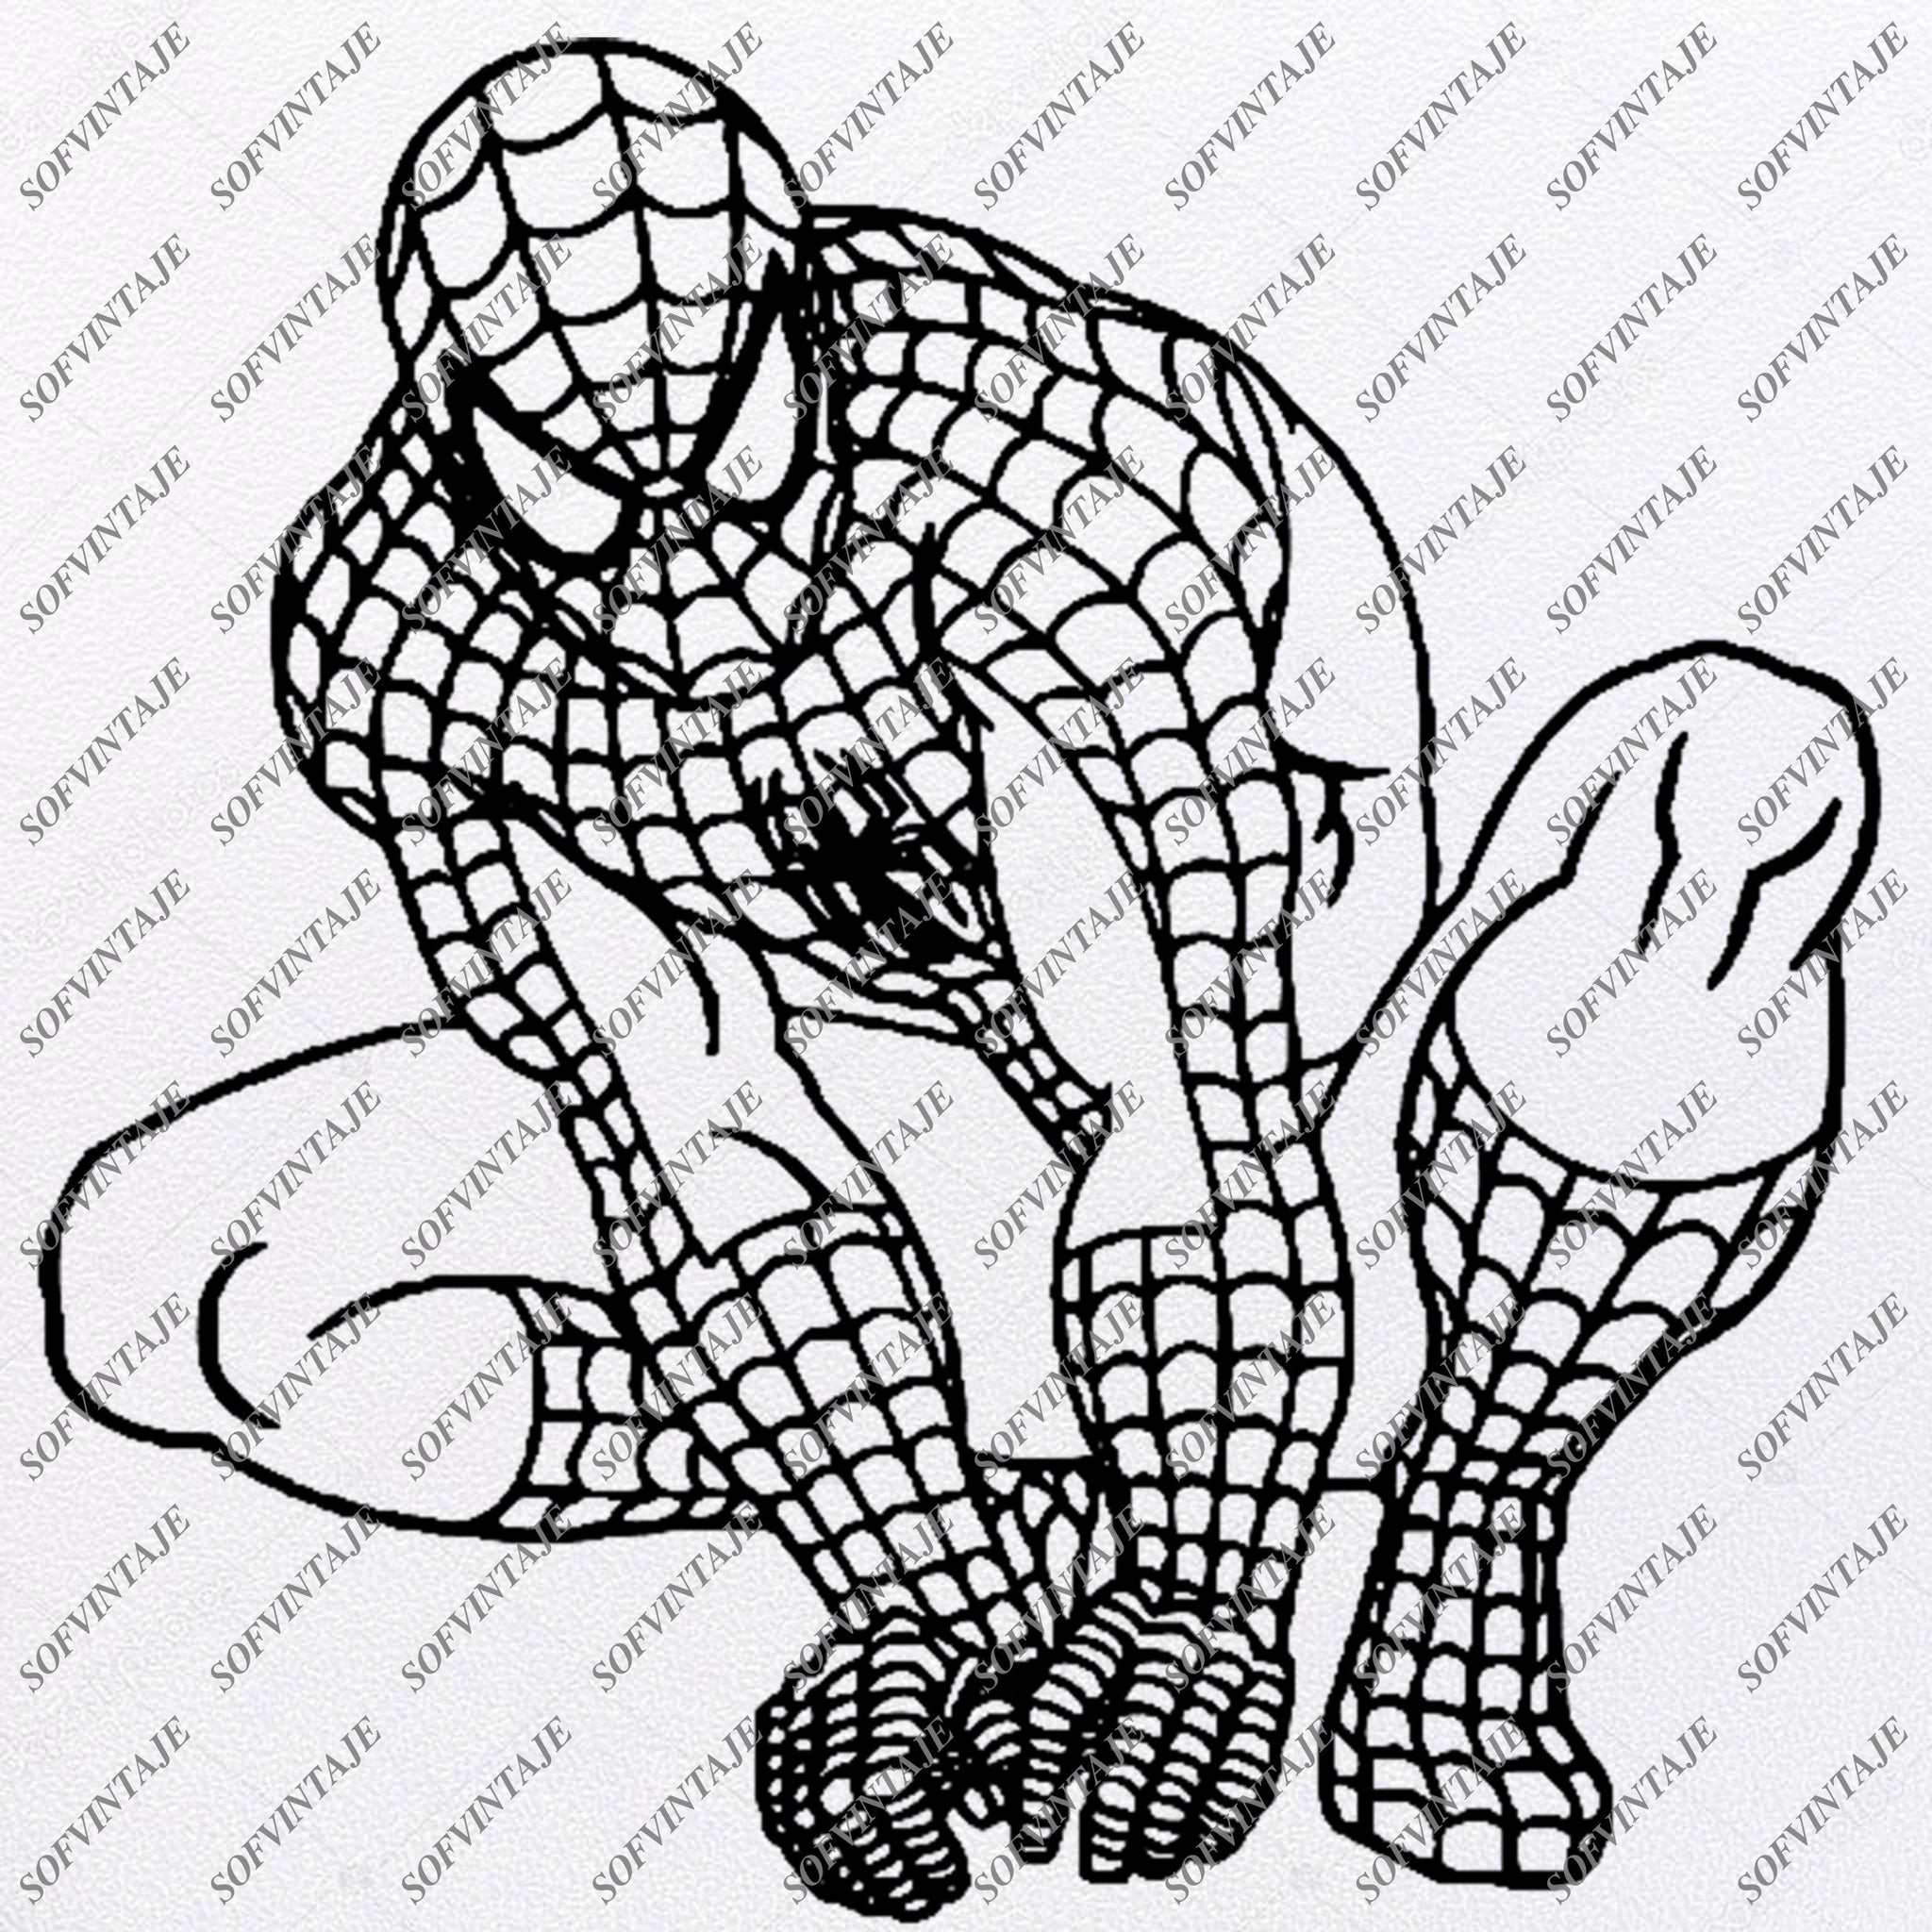 Download Spiderman Svg File Spiderman Original Svg Designtattoo Svg Spiderman C Sofvintaje SVG, PNG, EPS, DXF File